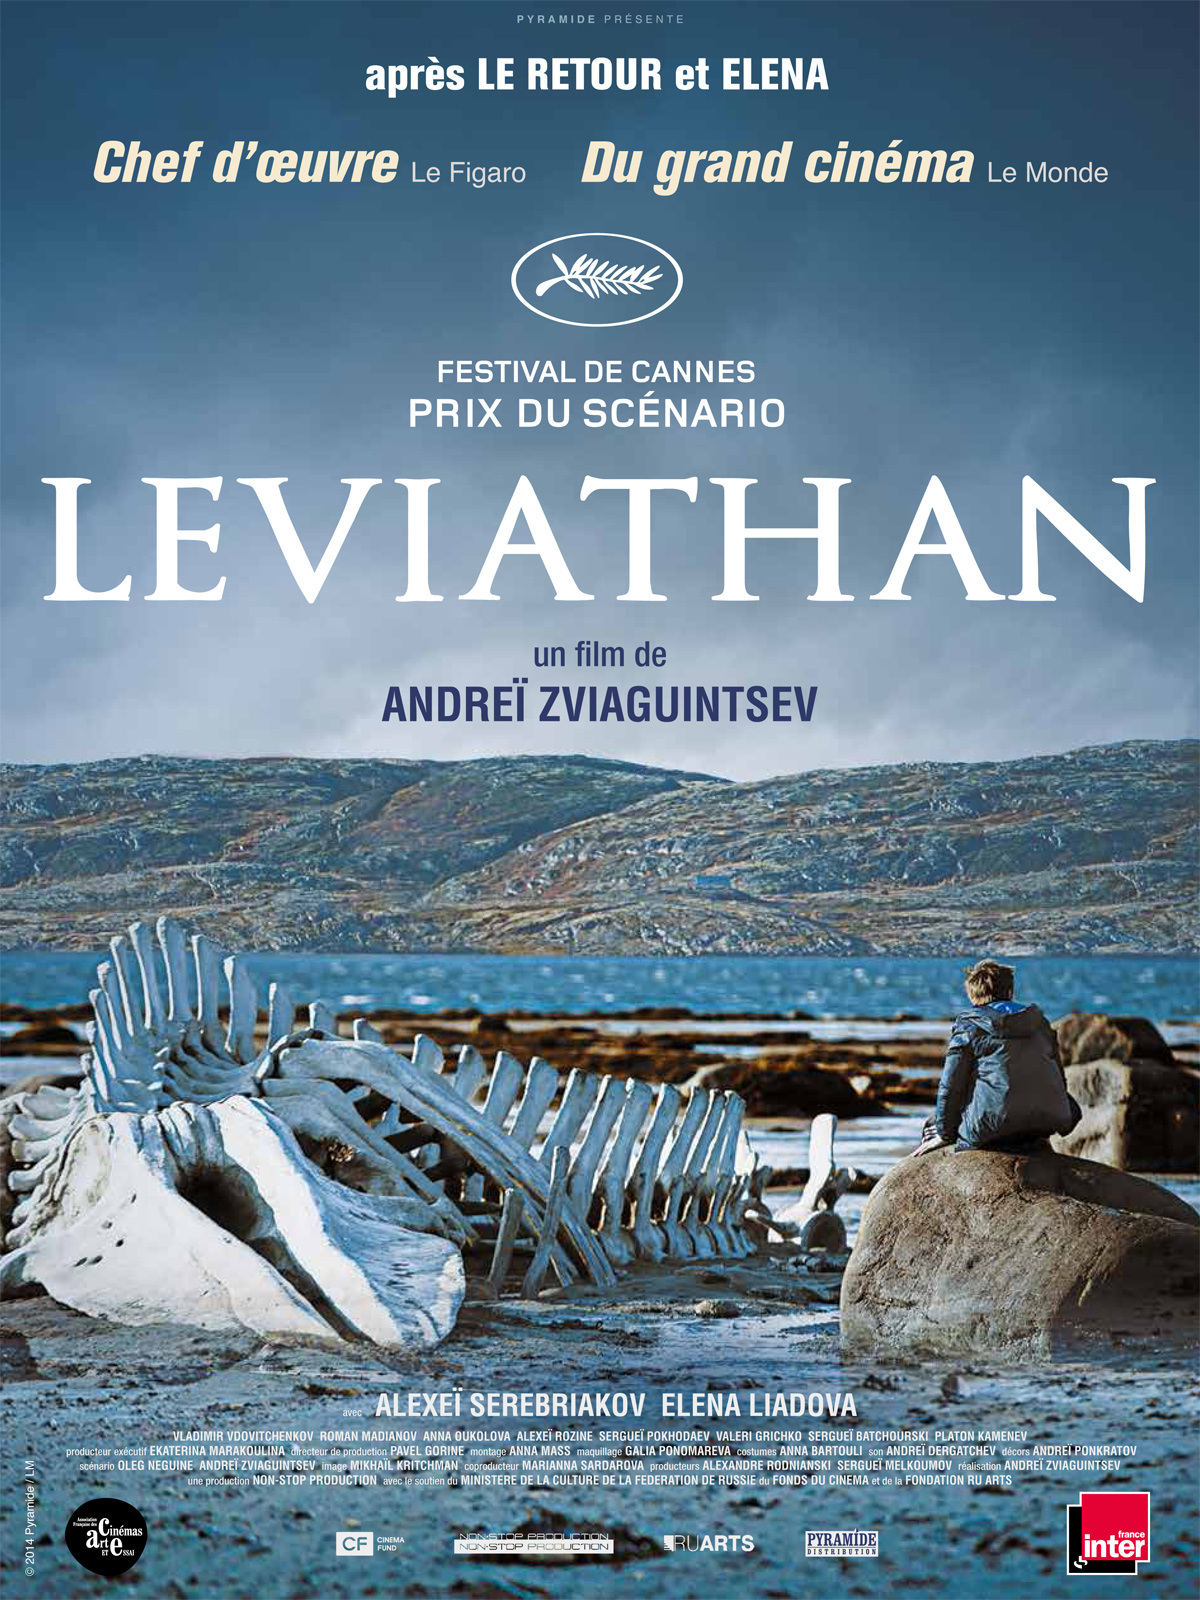 palme d'or - Leviathan: la vodka de la défense. leviathan affiches cannes